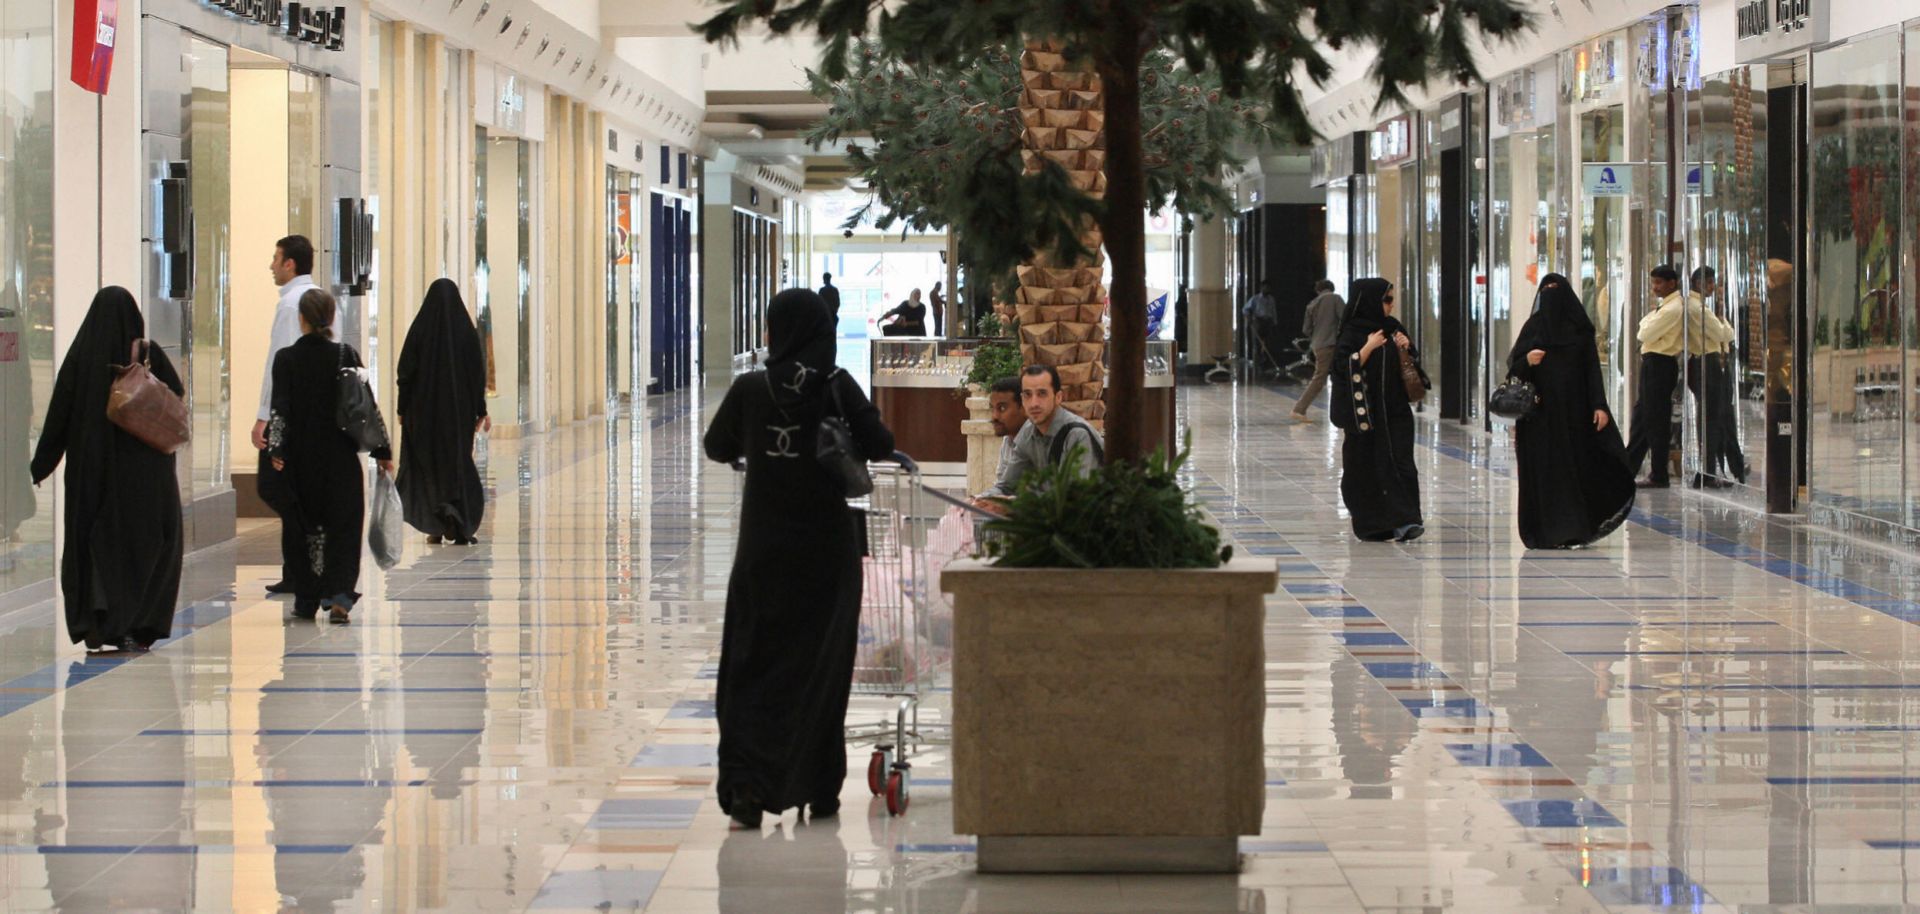 Saudi women shop in a mall in Riyadh.